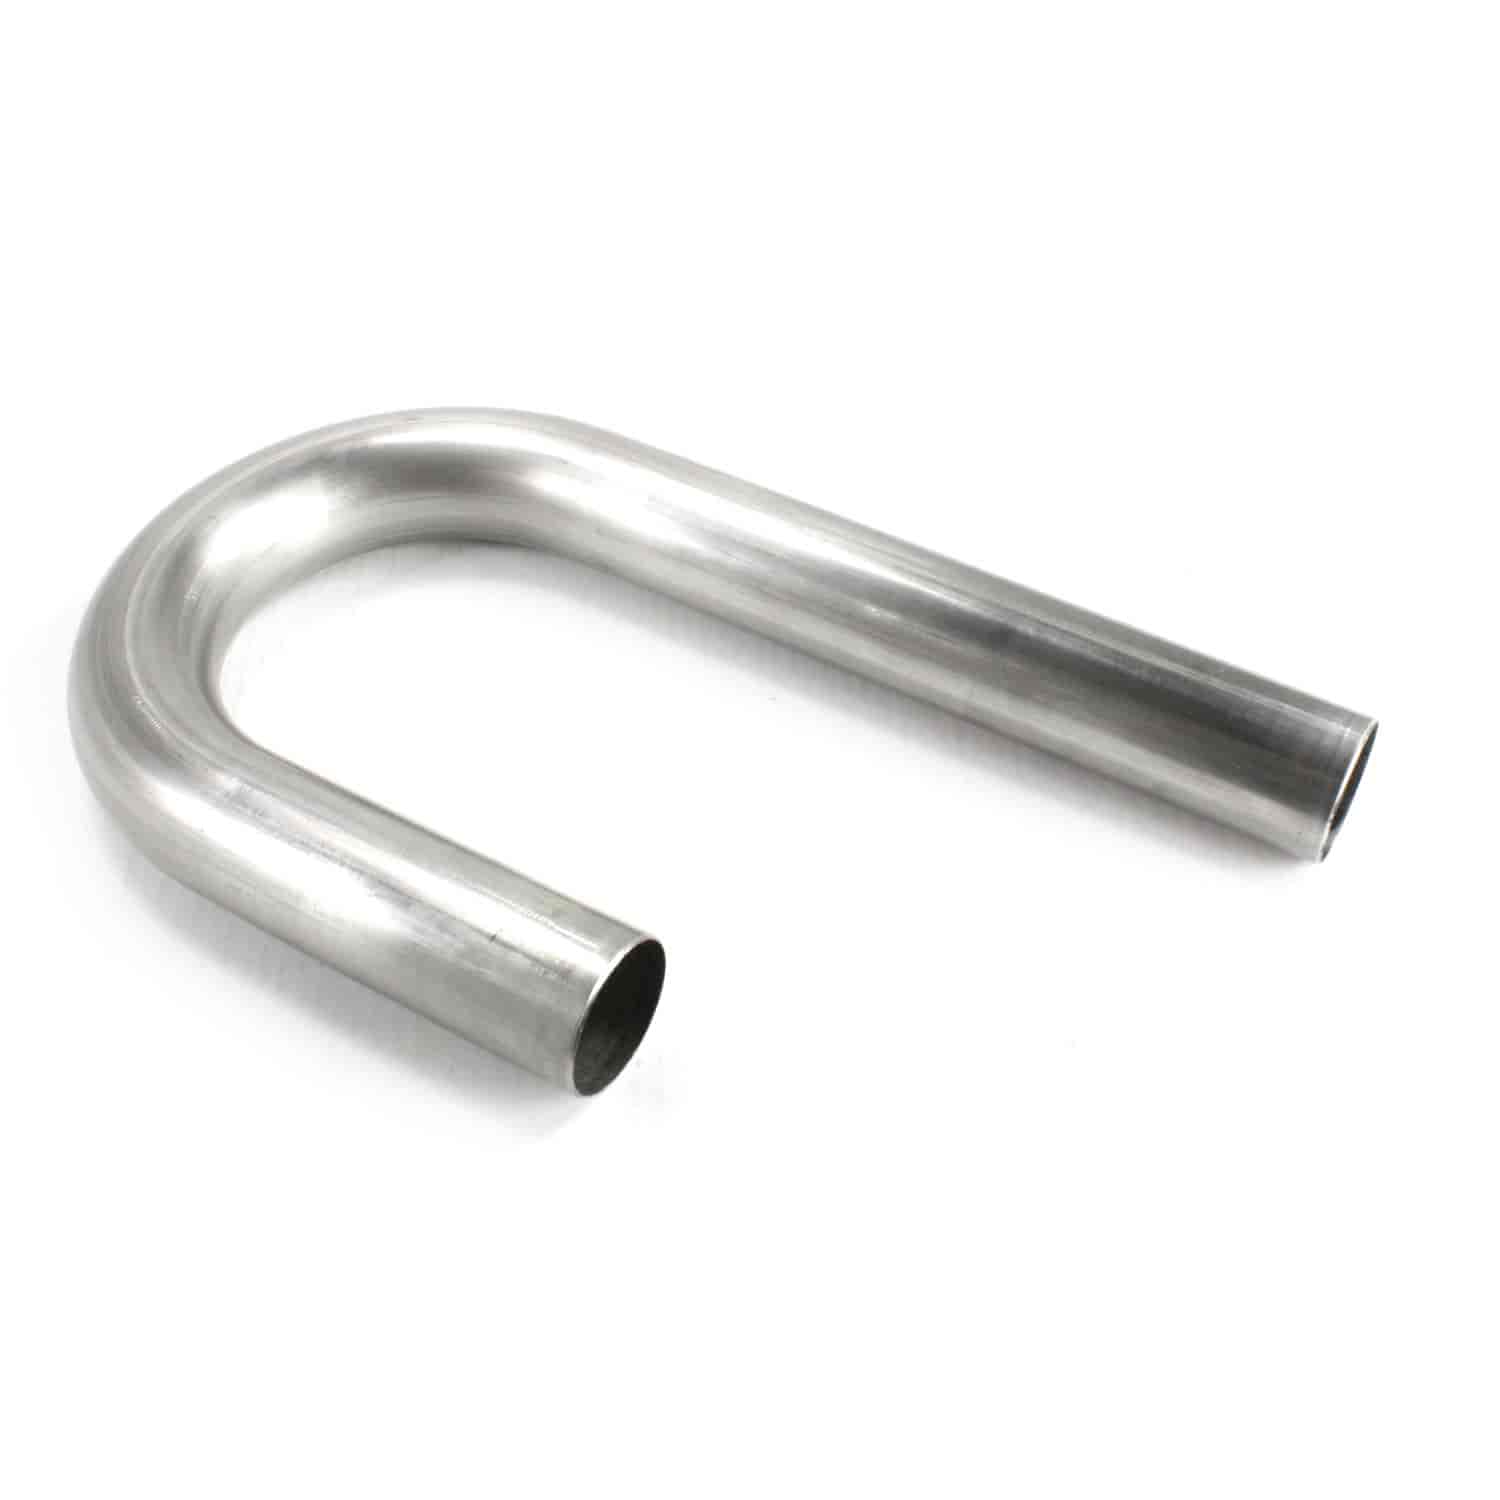 Stainless Steel J-Bend Exhaust Tubing 16 Gauge